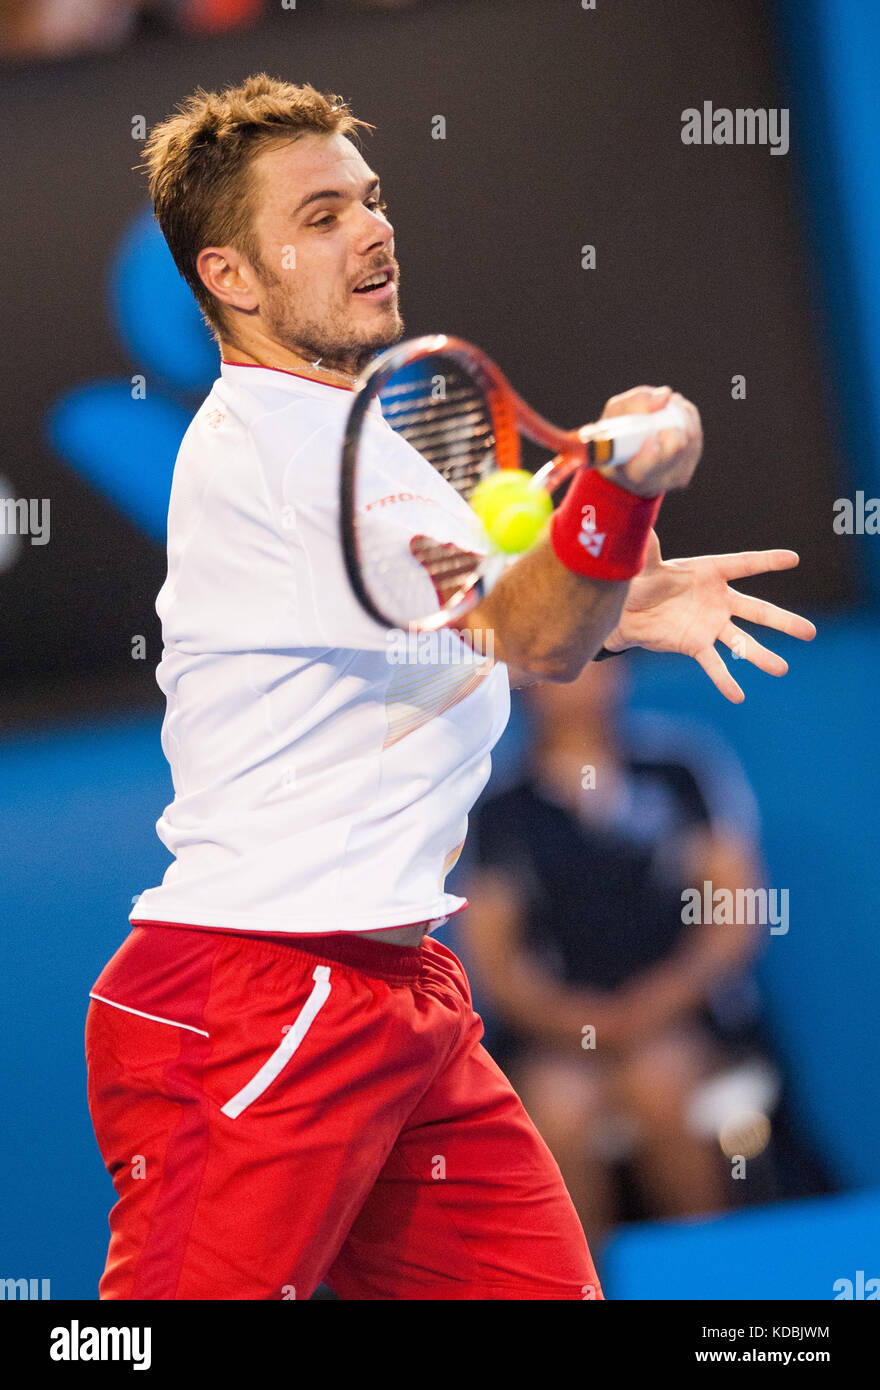 Stanislaus Wawrinka della Svizzera ha sconfitto il giocatore numero uno al mondo, R. Nadal, in Spagna, per rivendicare il campione di singolare degli Australian Open Men's 2014 Foto Stock